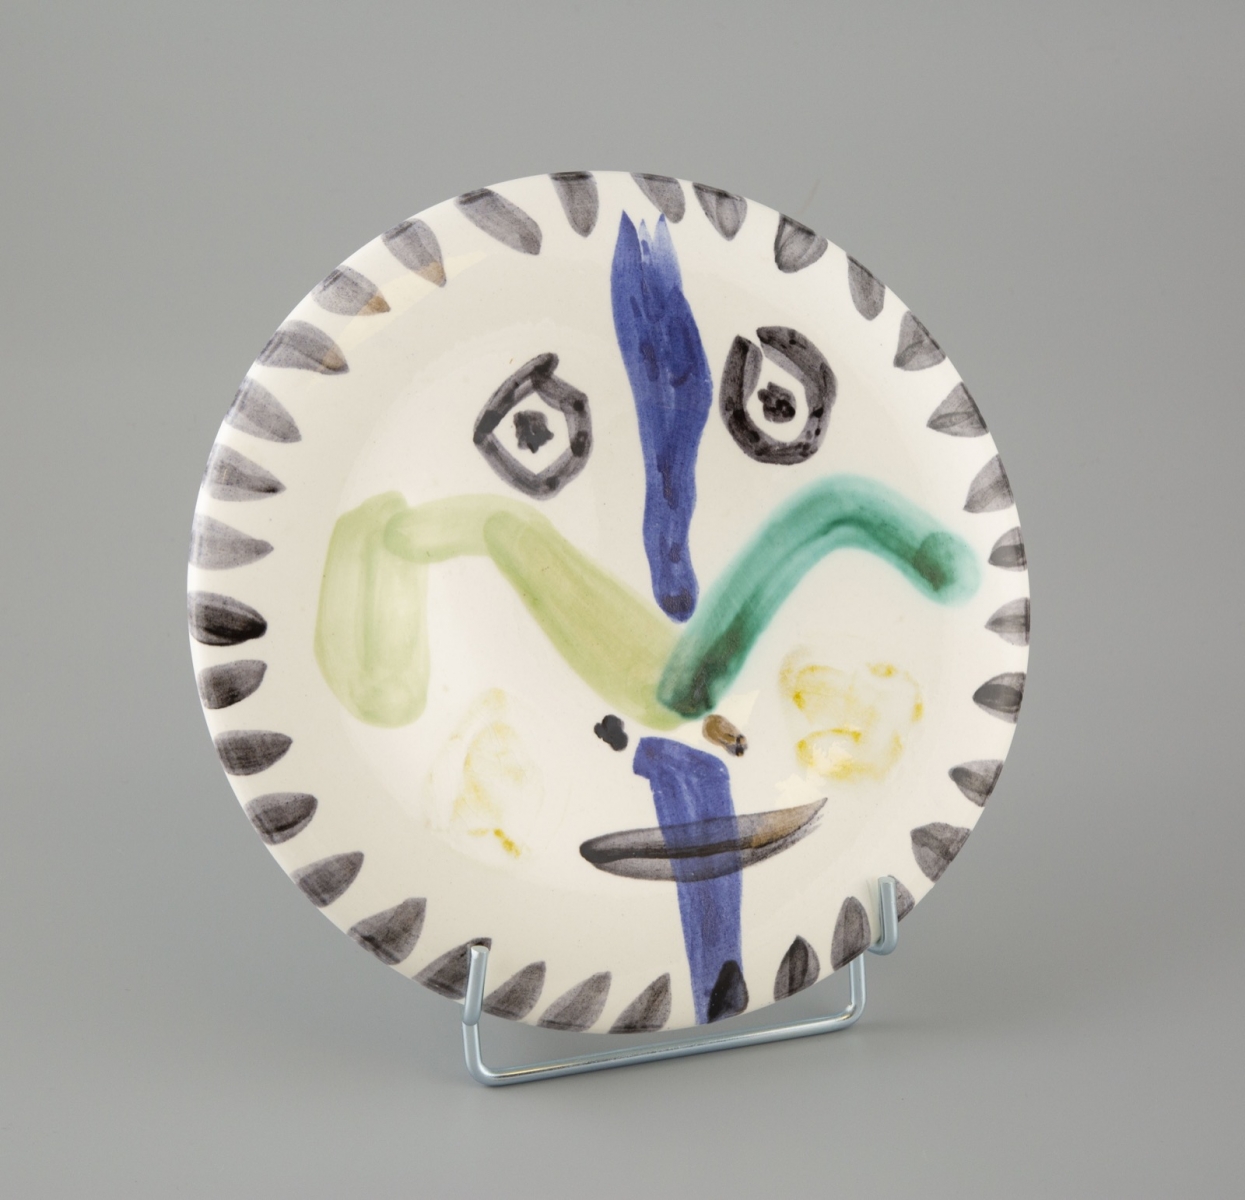 63- Pabli Picasso-Madoura. Visage n°144. Assiette en terre de faience à décor aux engobes noir, vert, bleu, jaune. D.25cm. Adjugé 6200€